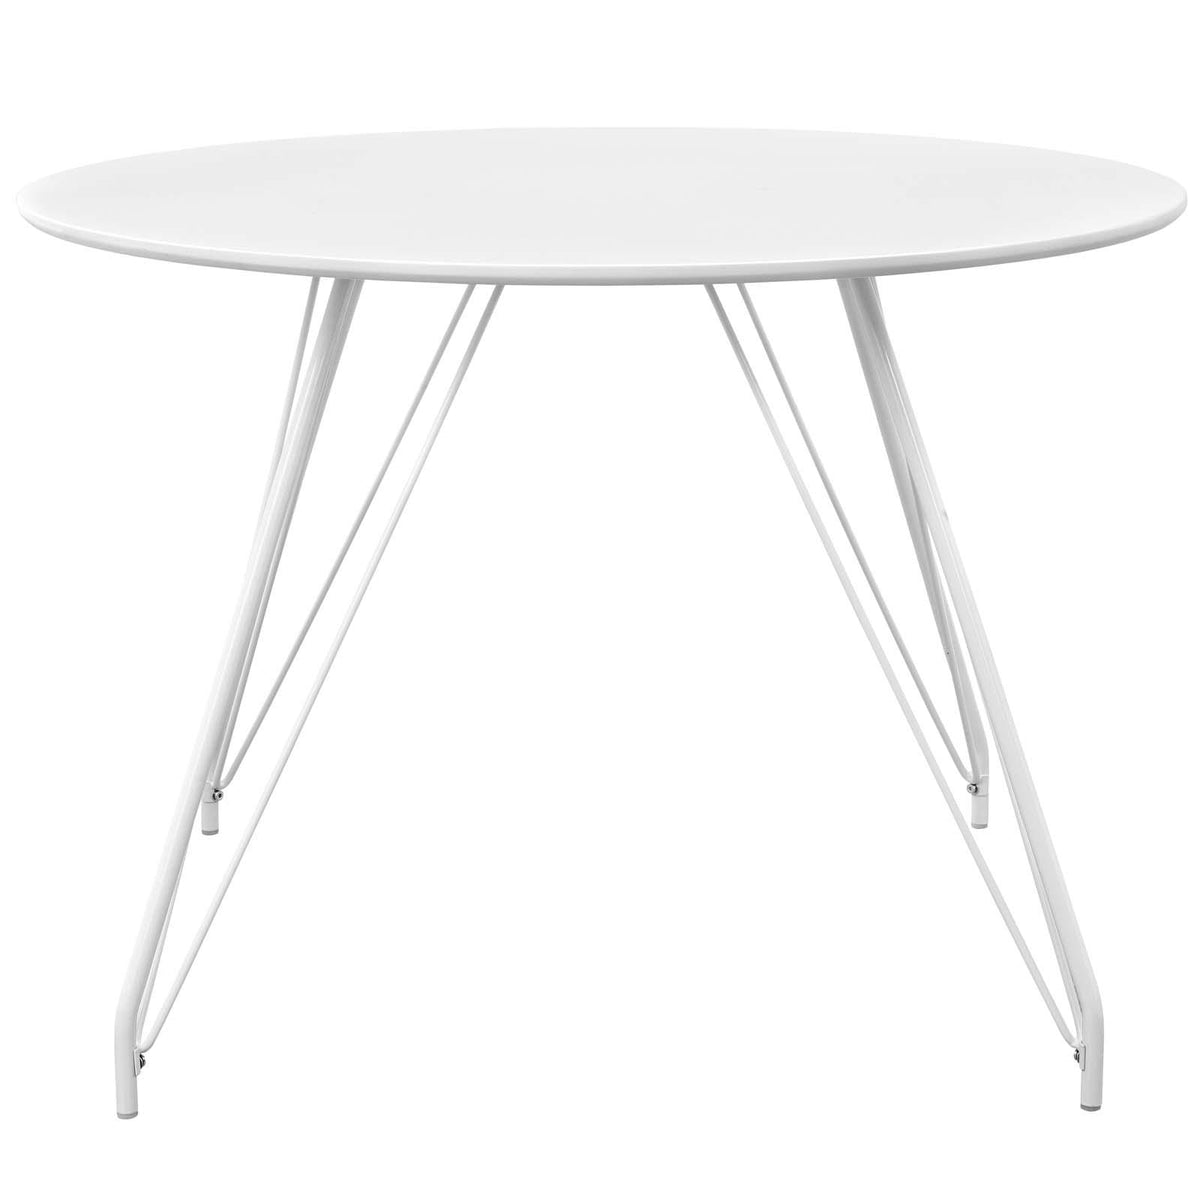 Modway Furniture Modern Satellite Circular Dining Table - EEI-2673